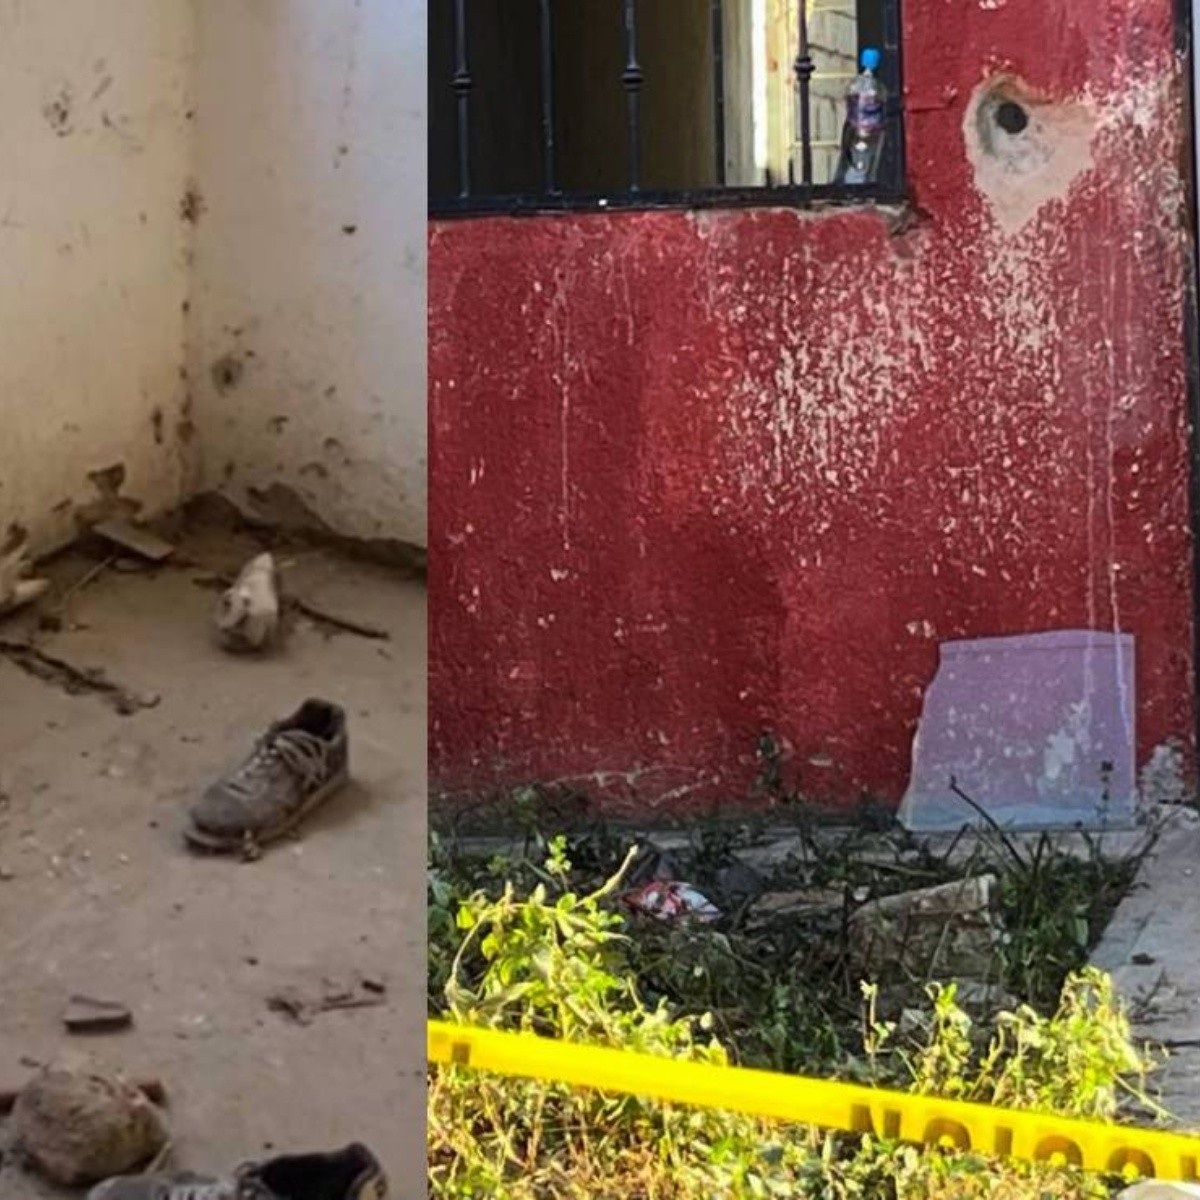 video: hallan restos humanos dentro de tambo con cemento en el patio de una casa en jalisco